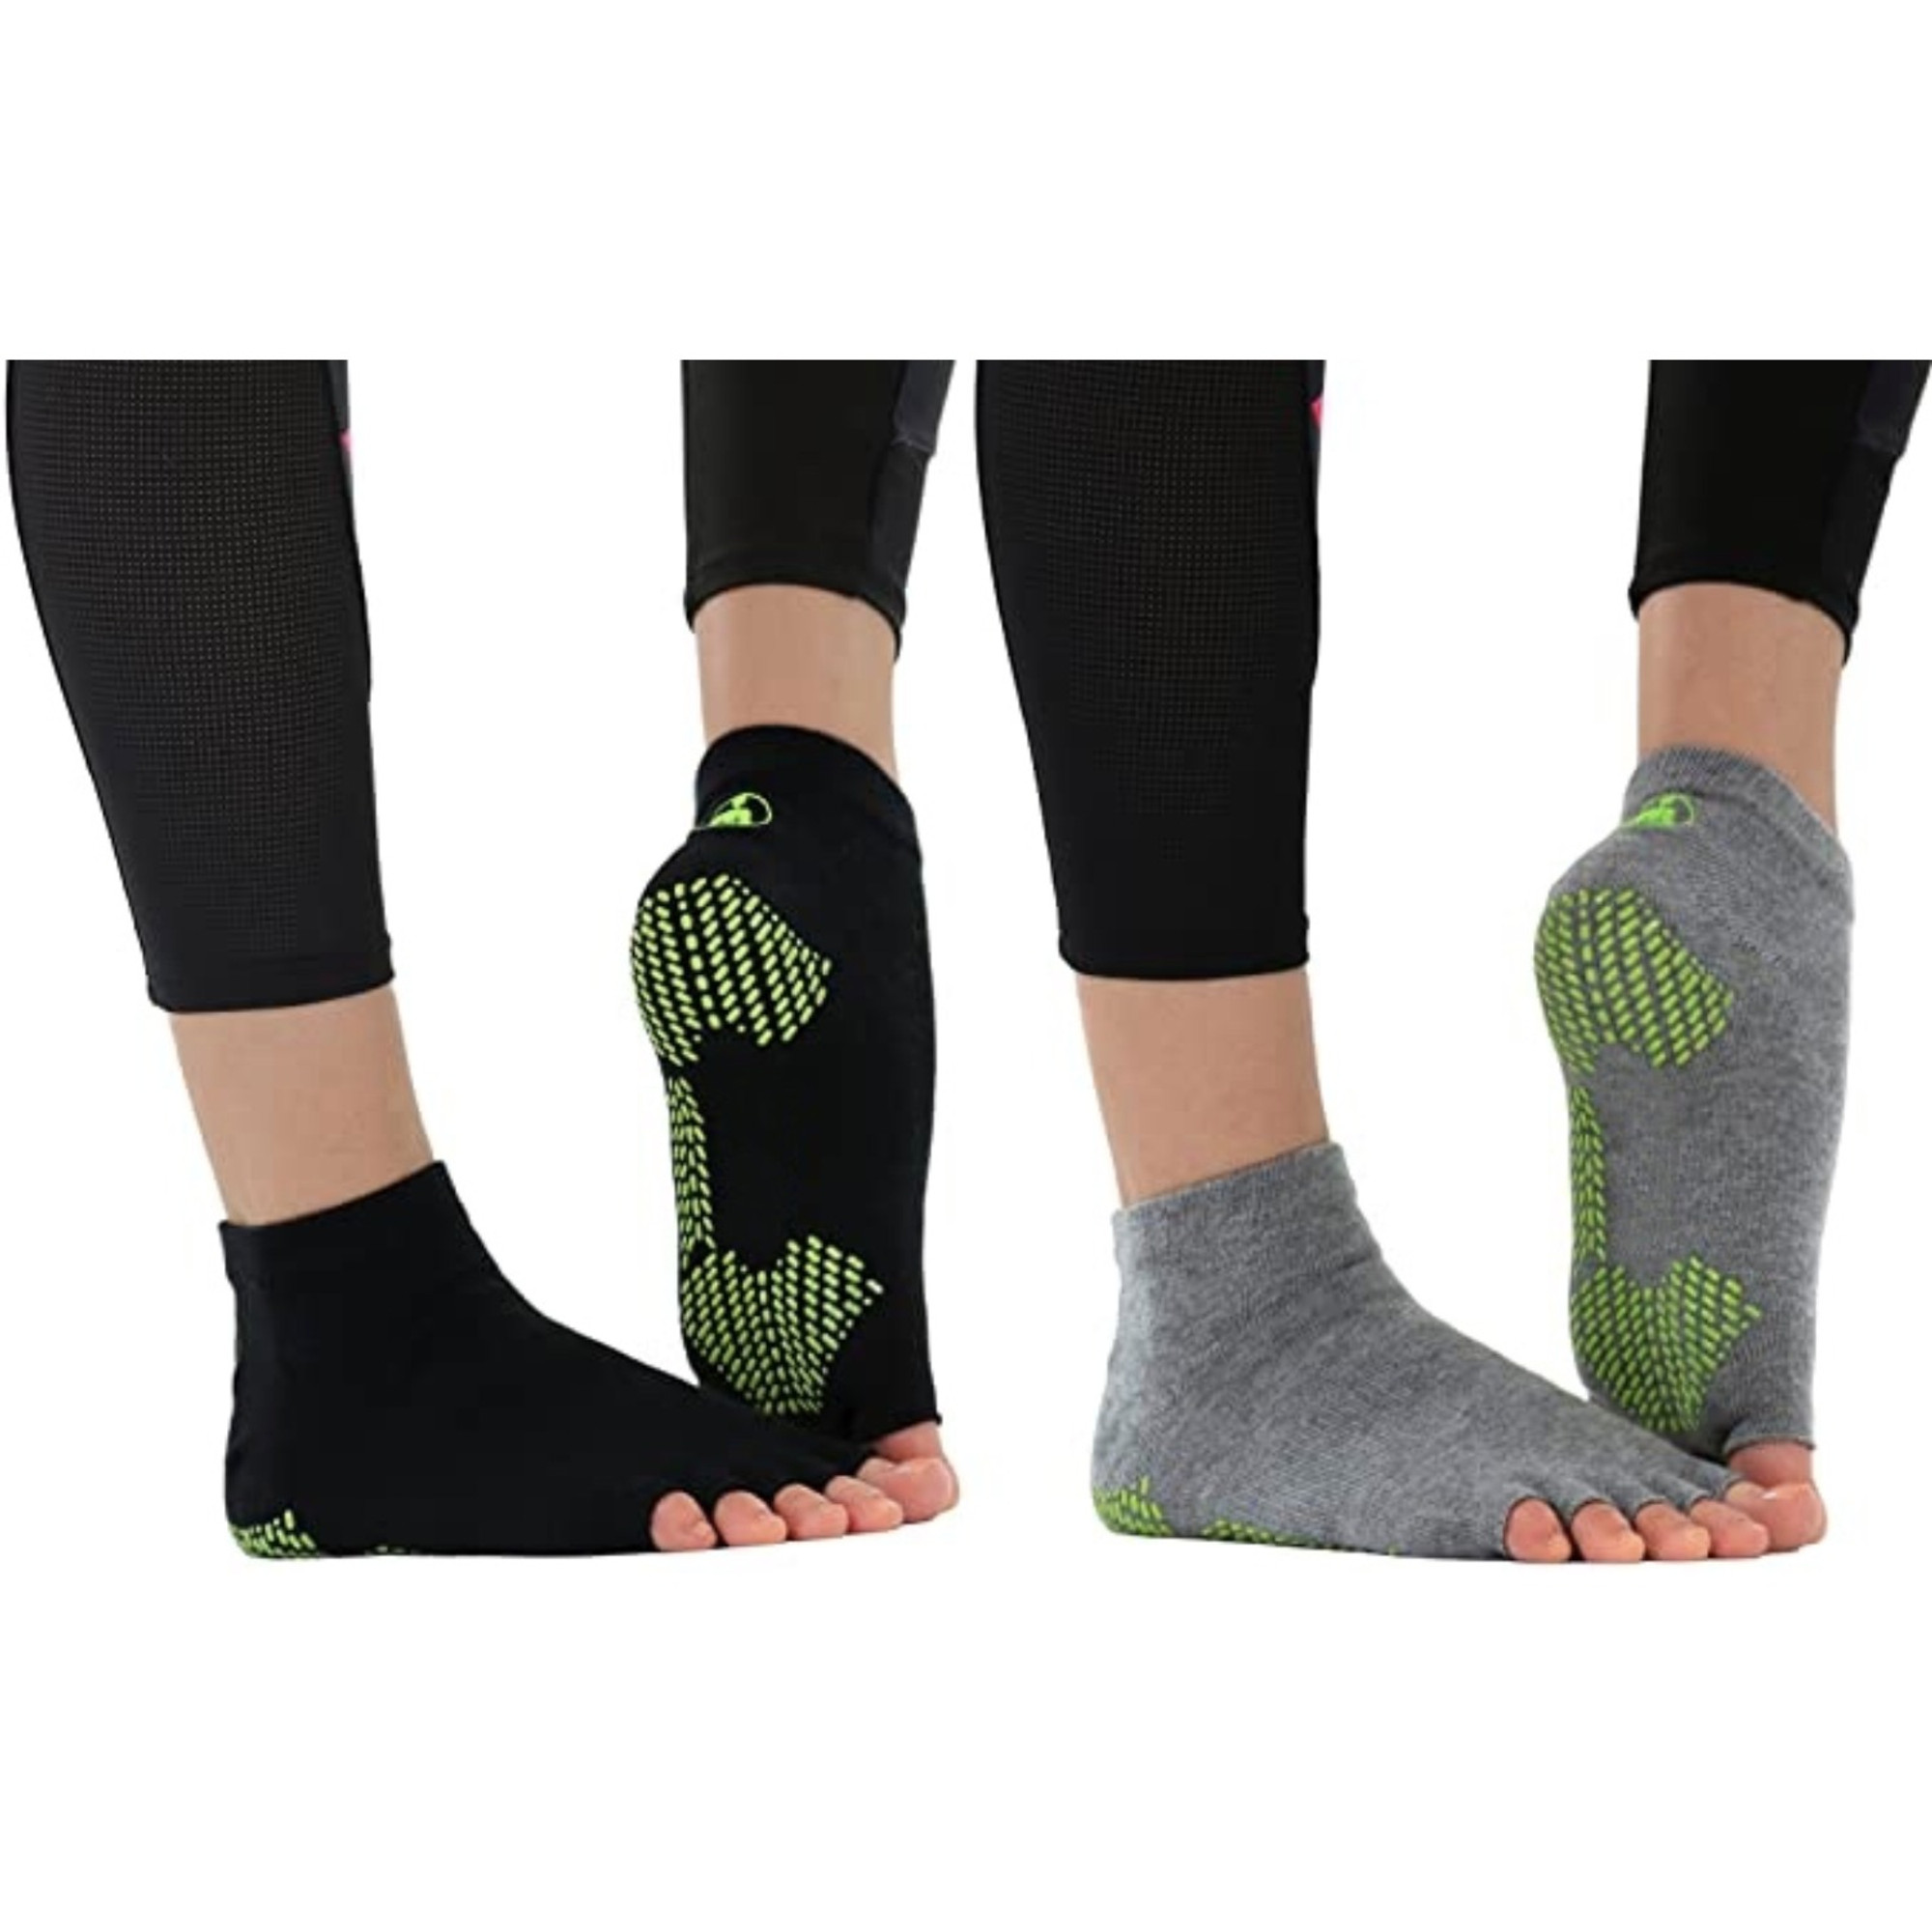 Toeless non-slip grip socks - non-slip yoga, barre, pilates, home